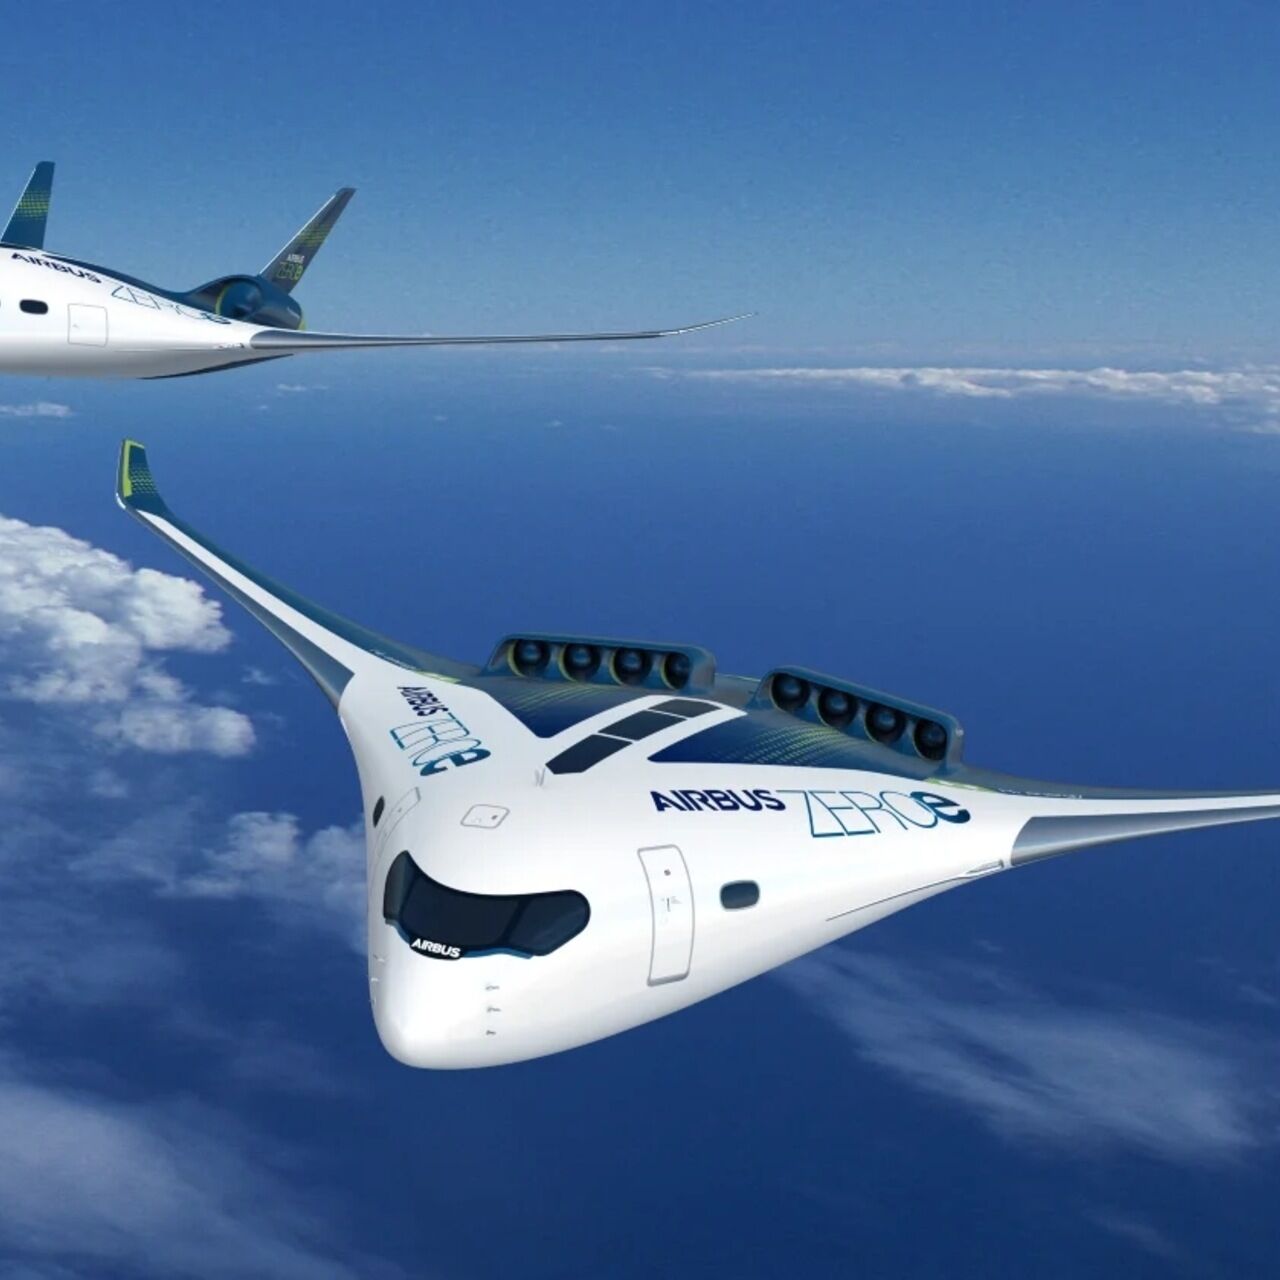 Buka: ZEROe projekat kompanije Airbus jedan je od aviona s mješovitim krilima predloženih posljednjih godina i predmet proučavanja